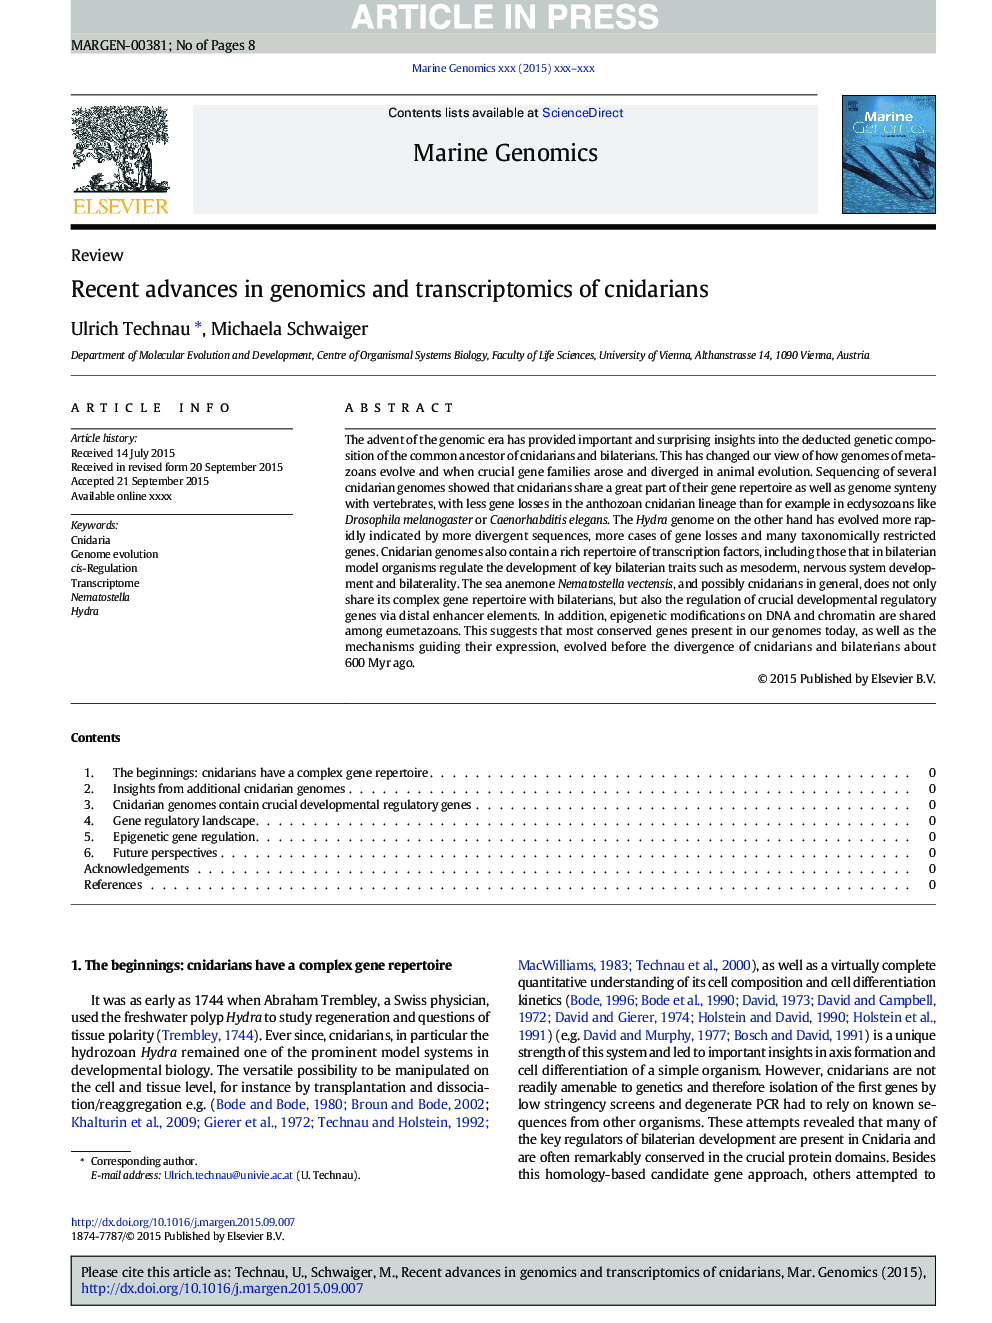 Recent advances in genomics and transcriptomics of cnidarians